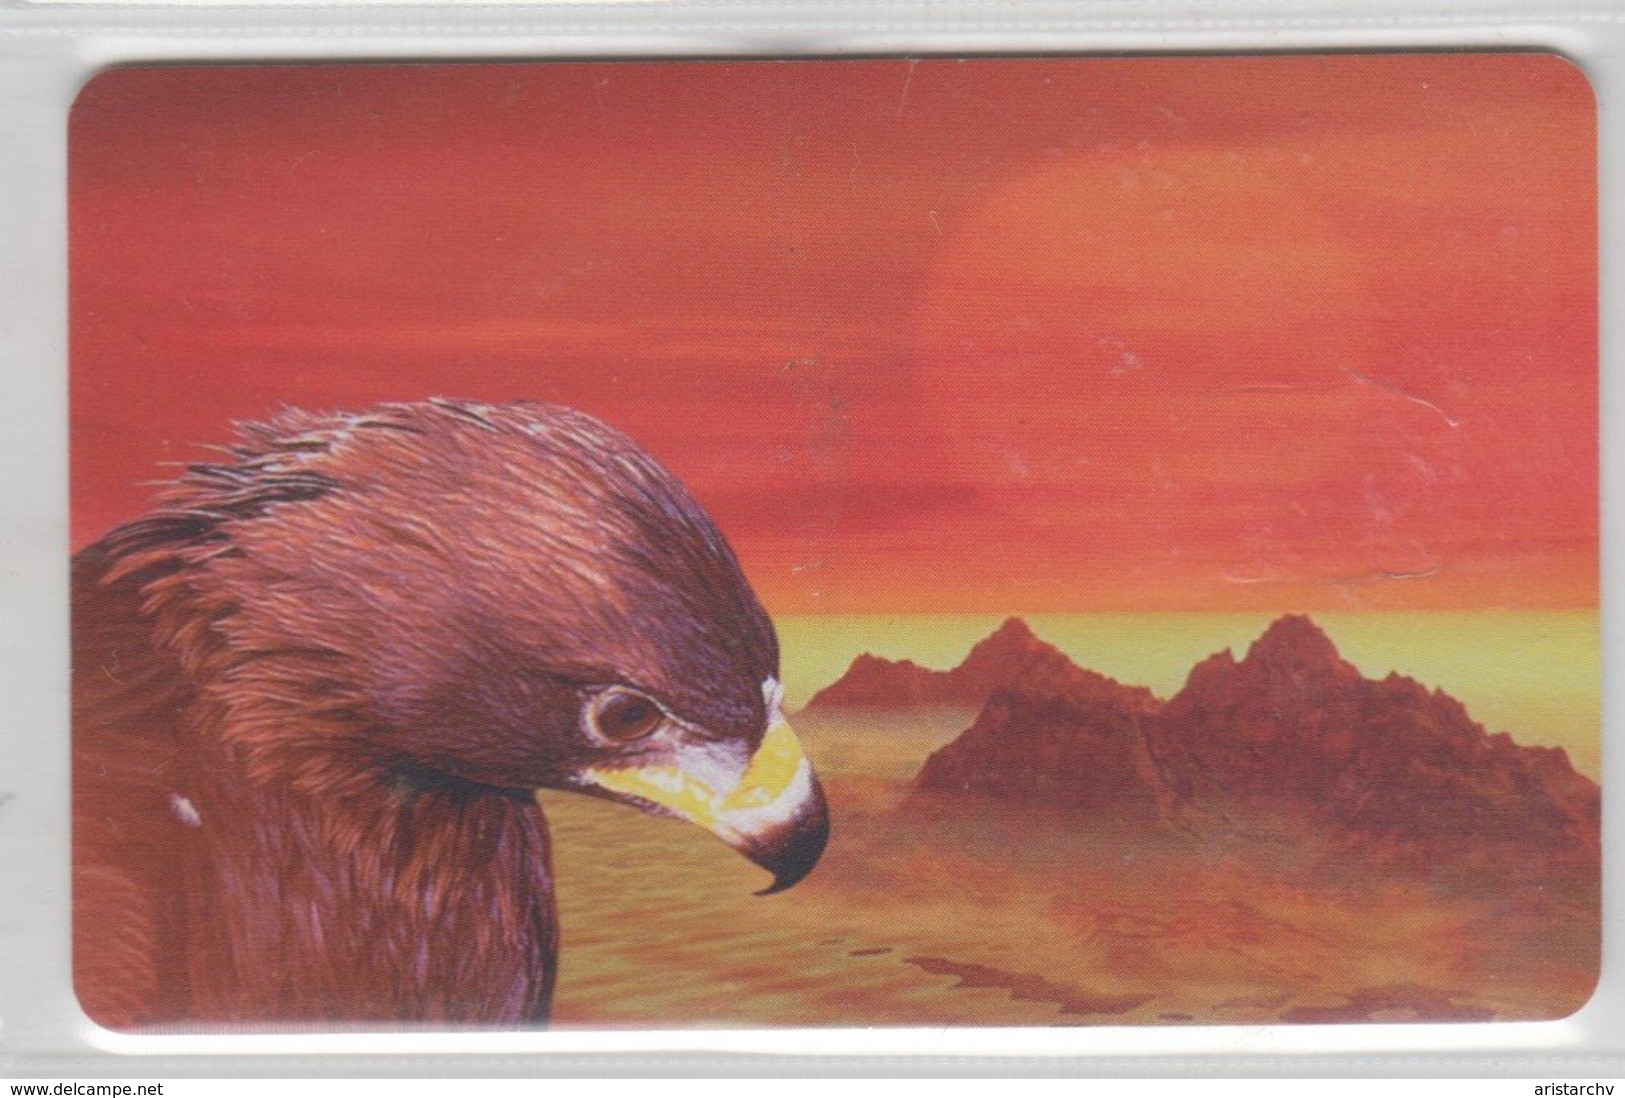 KAZAKHSTAN 1999 BIRD EAGLE - Eagles & Birds Of Prey